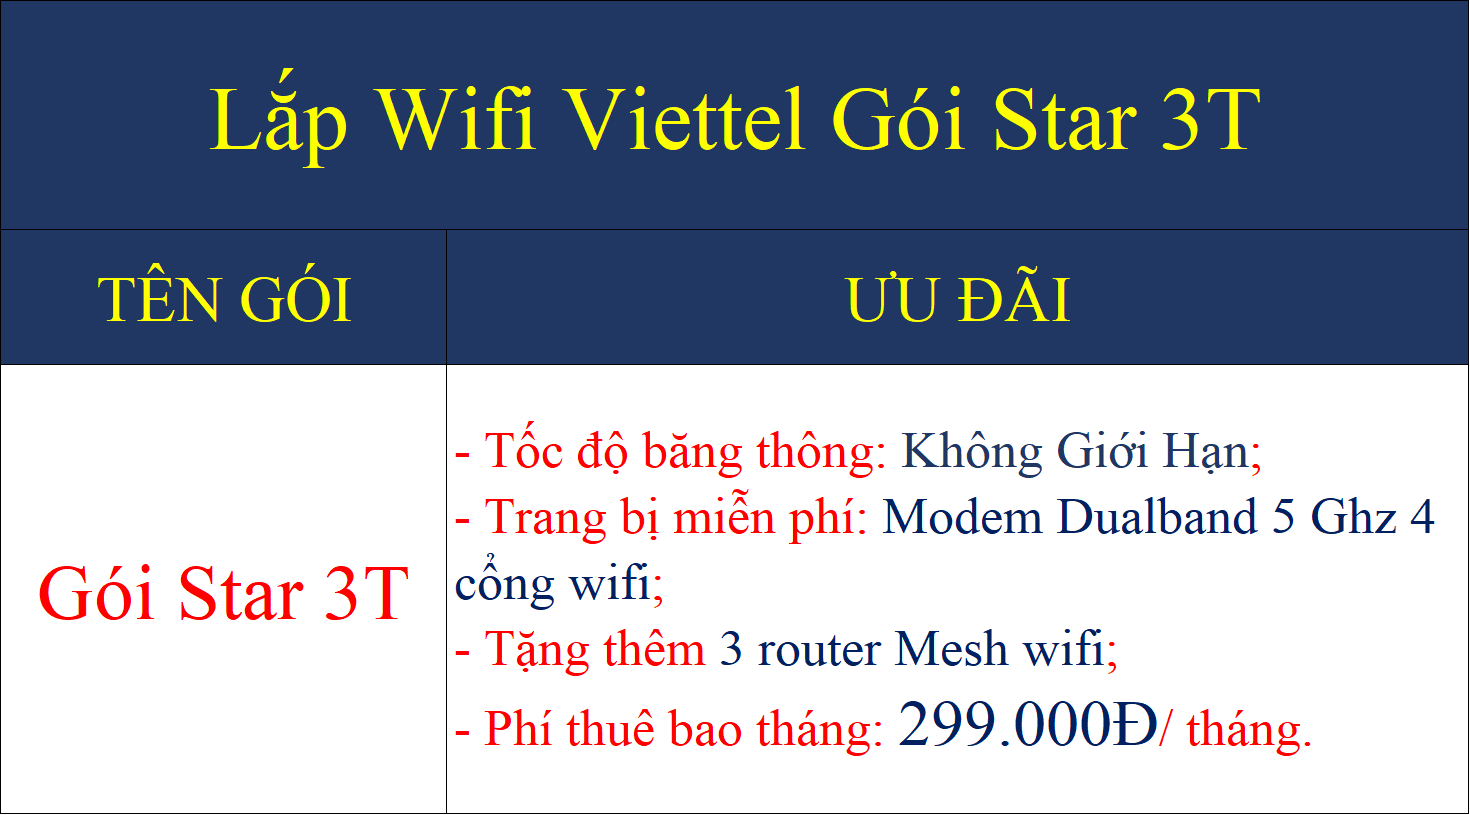 Lắp wifi Viettel gói Star 3T